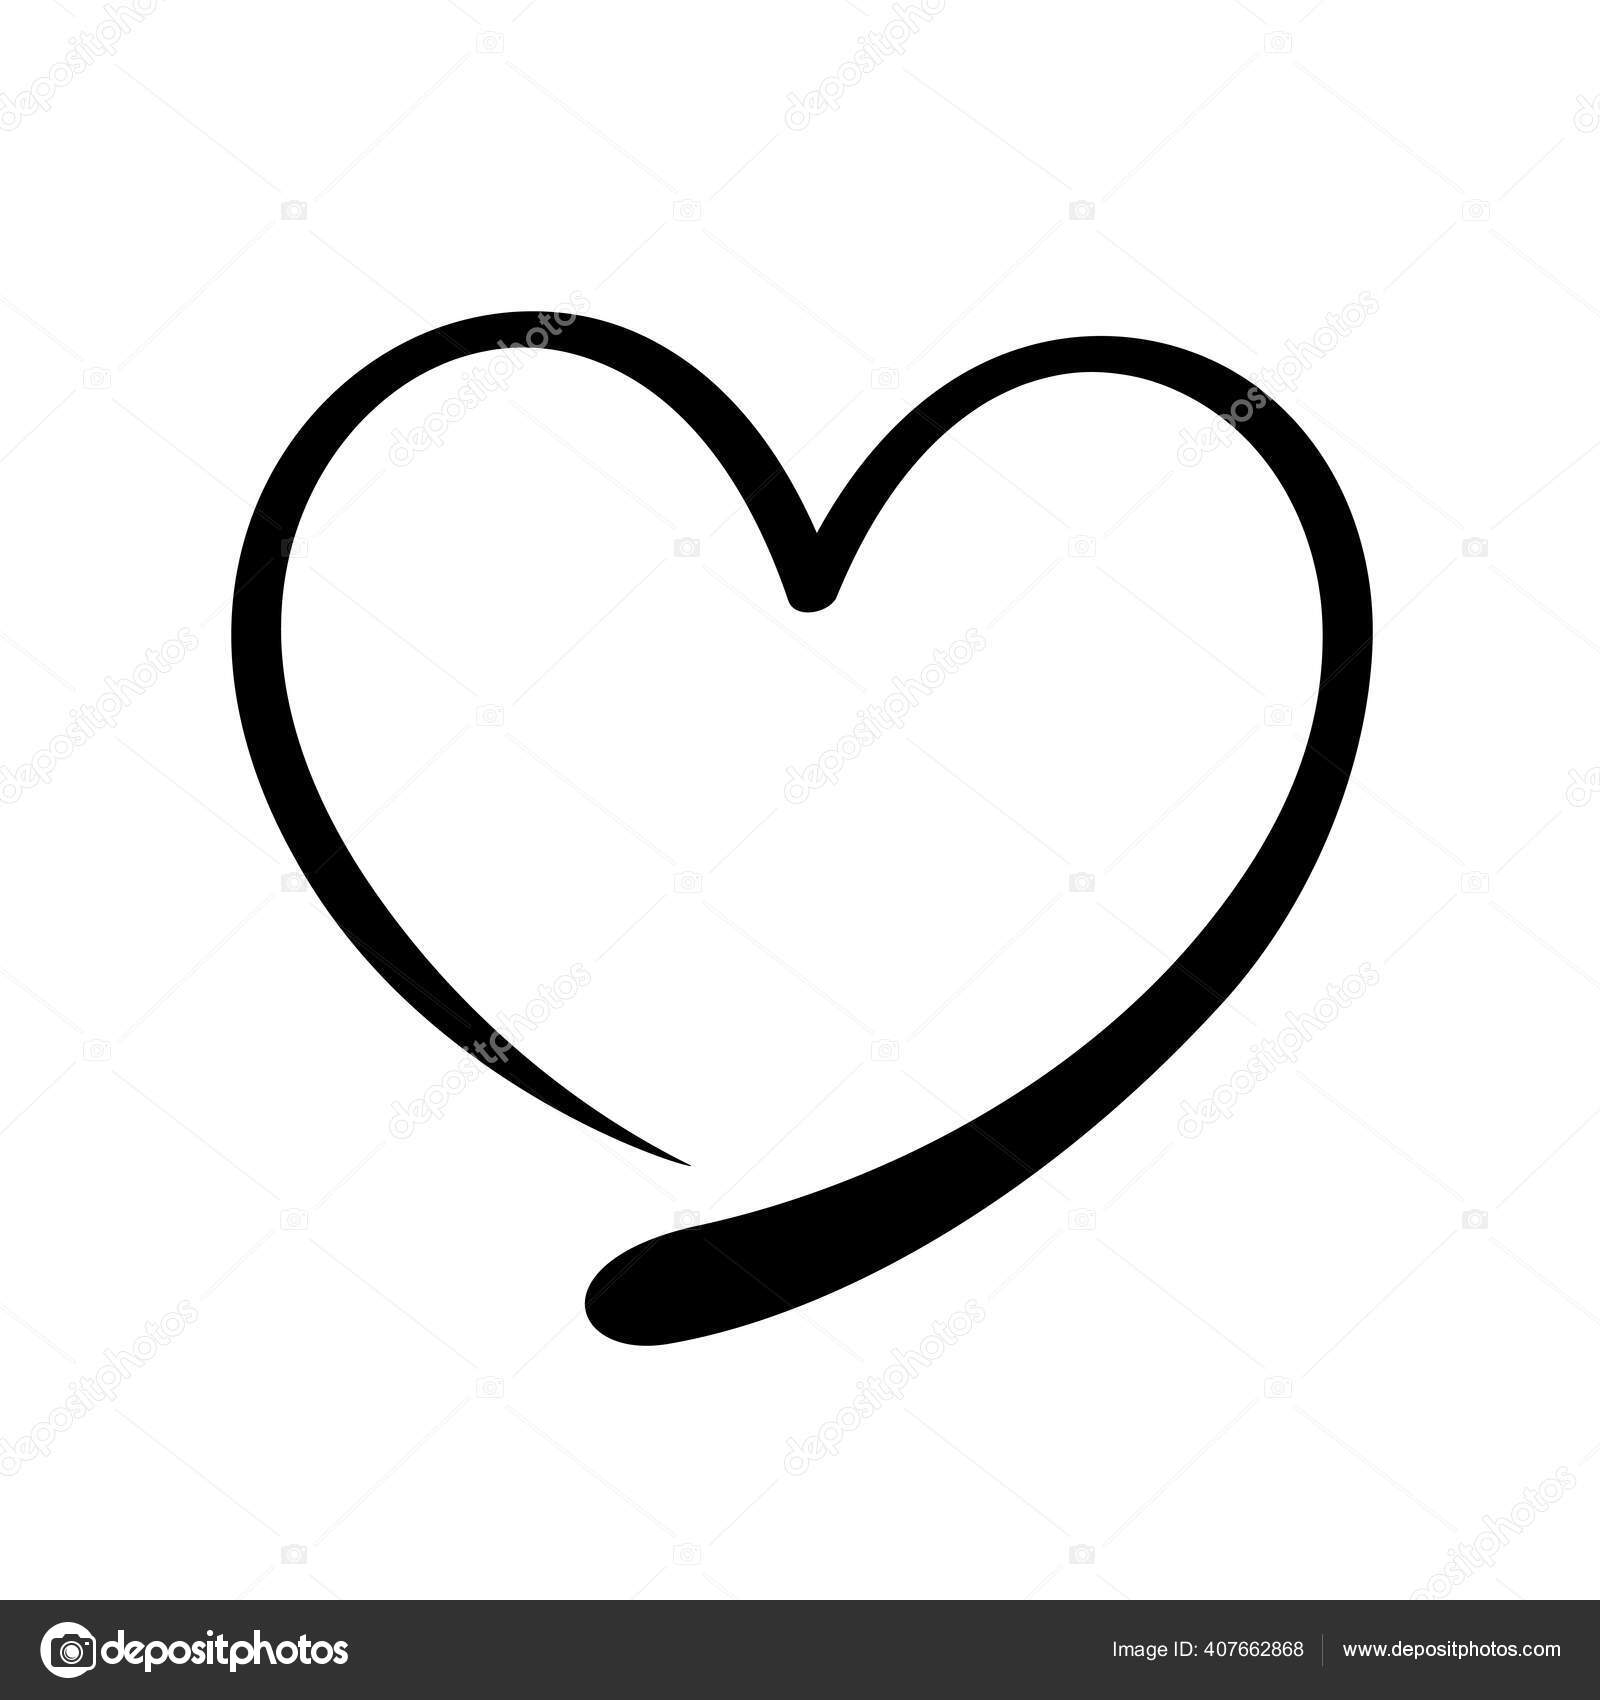 Valentine's Day Black Hearts Bubble-free stickers